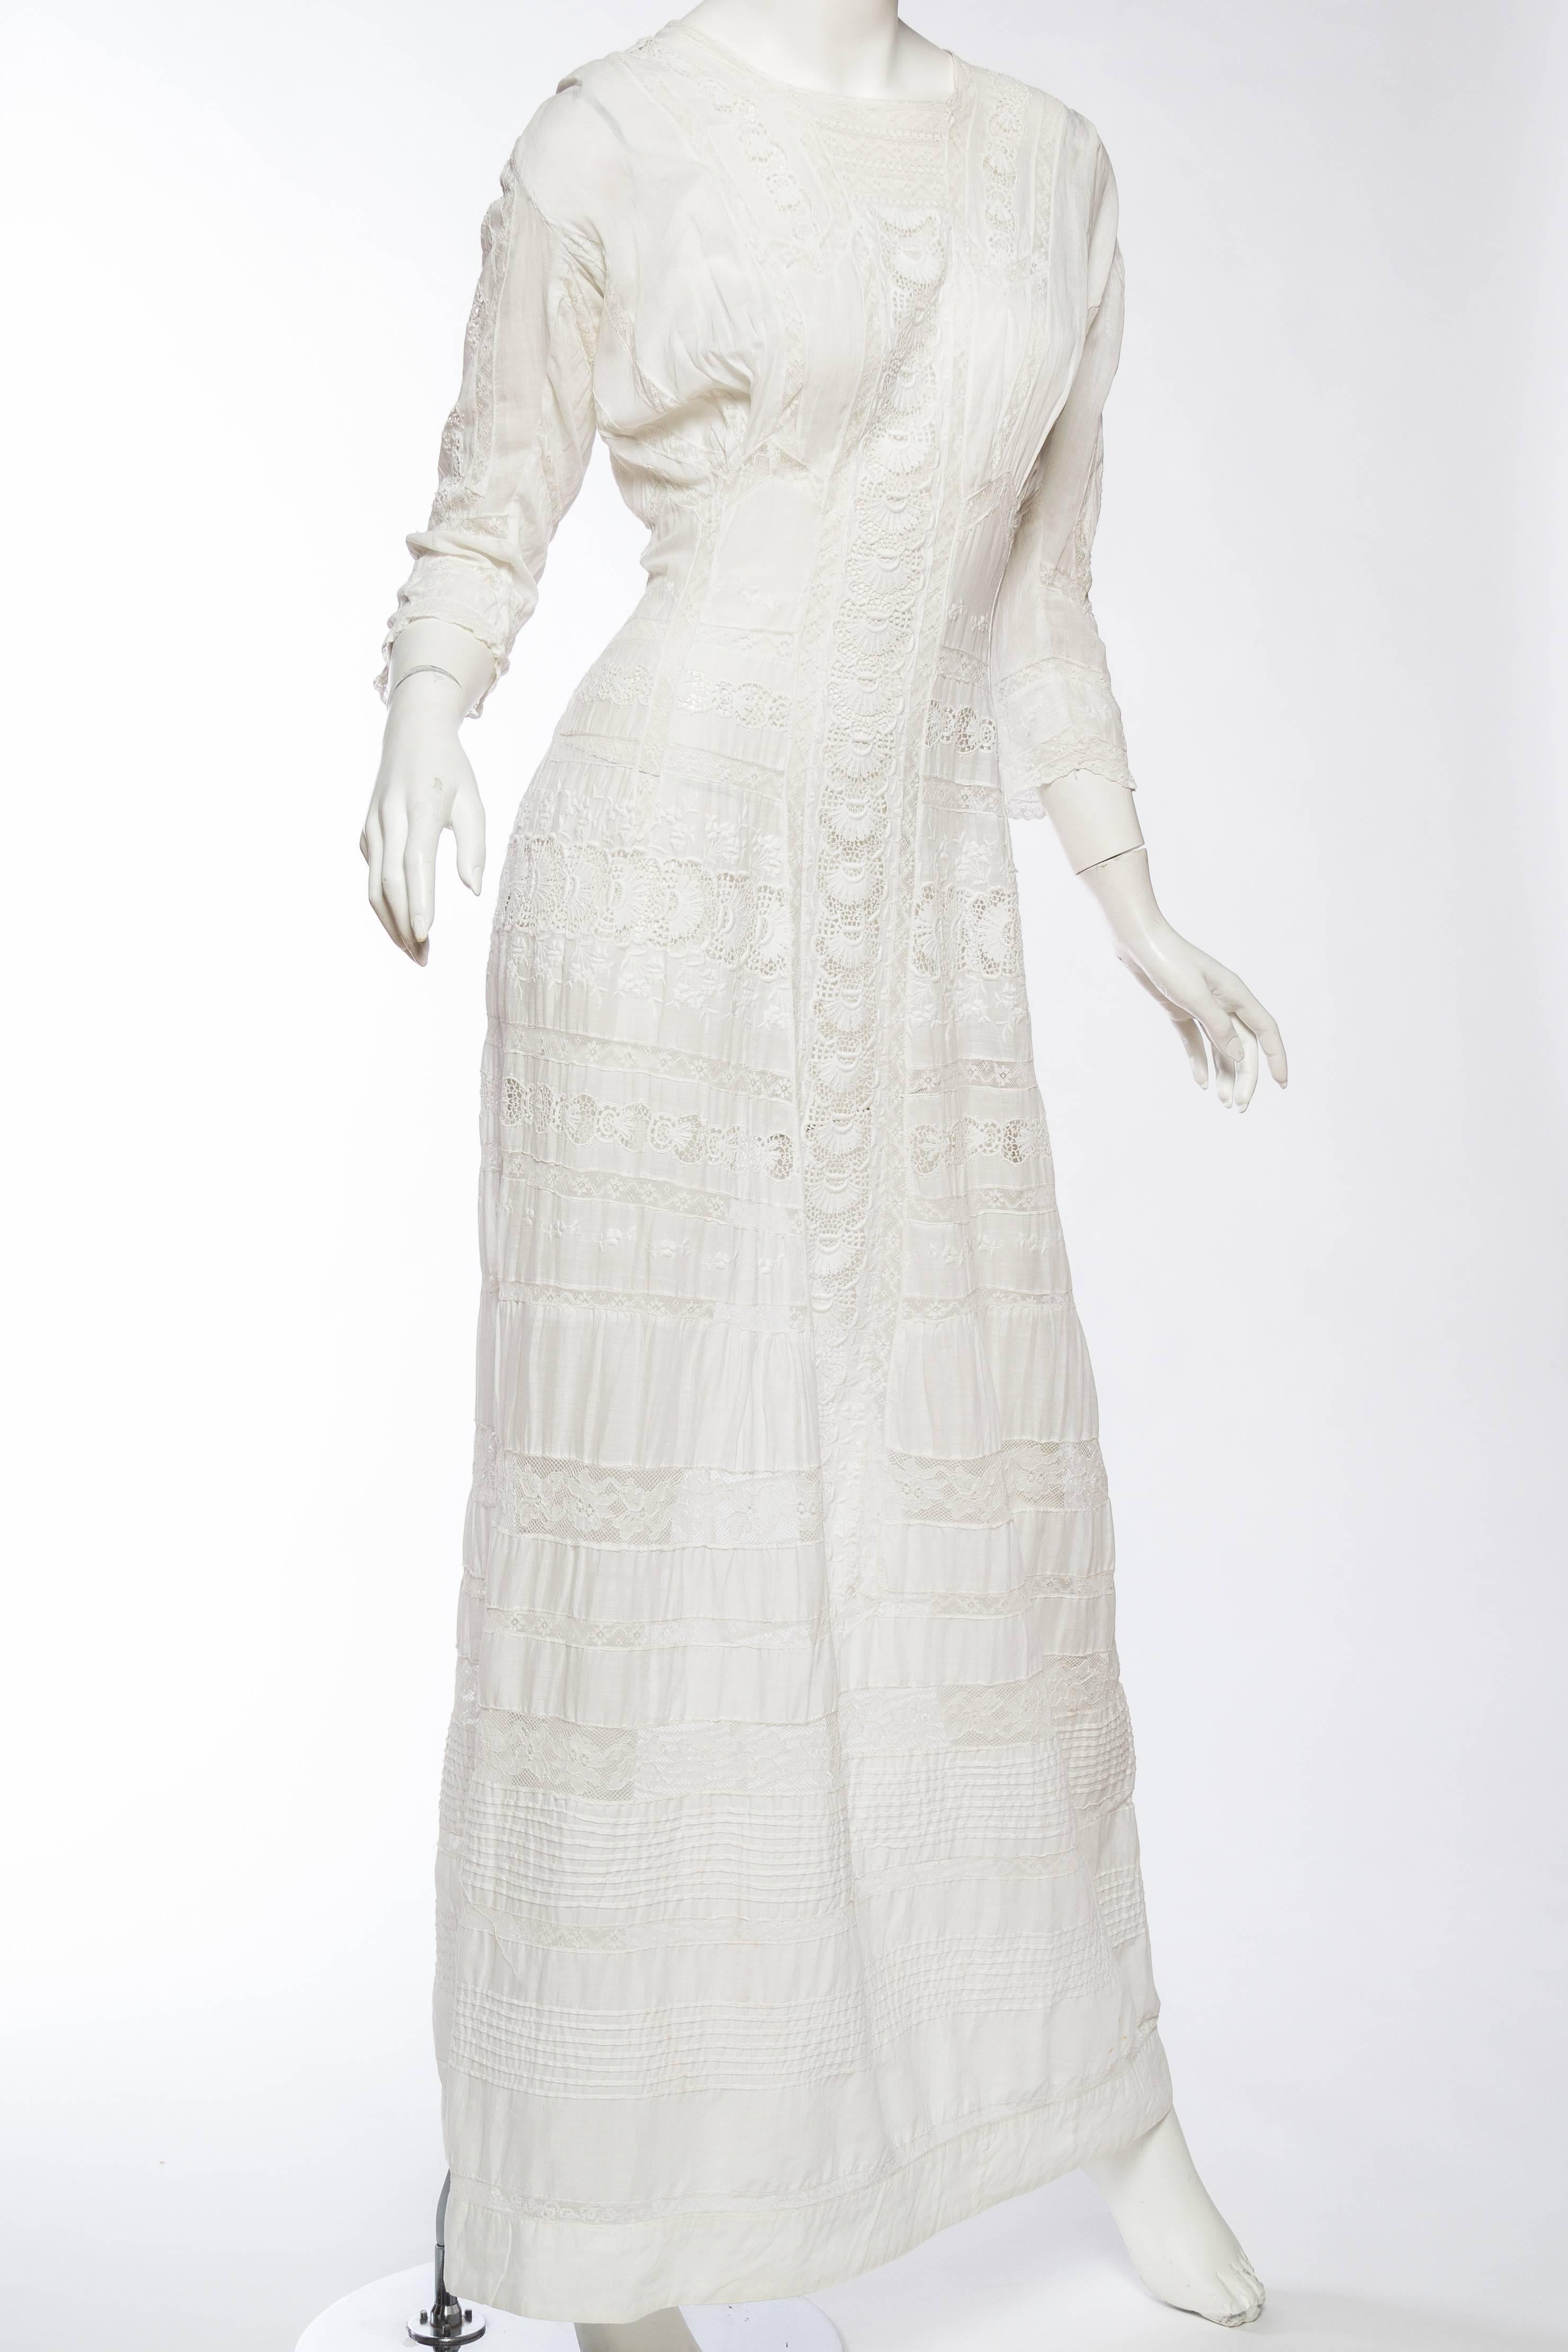 Gray Antique Cotton and Lace Edwardian Tea Dress